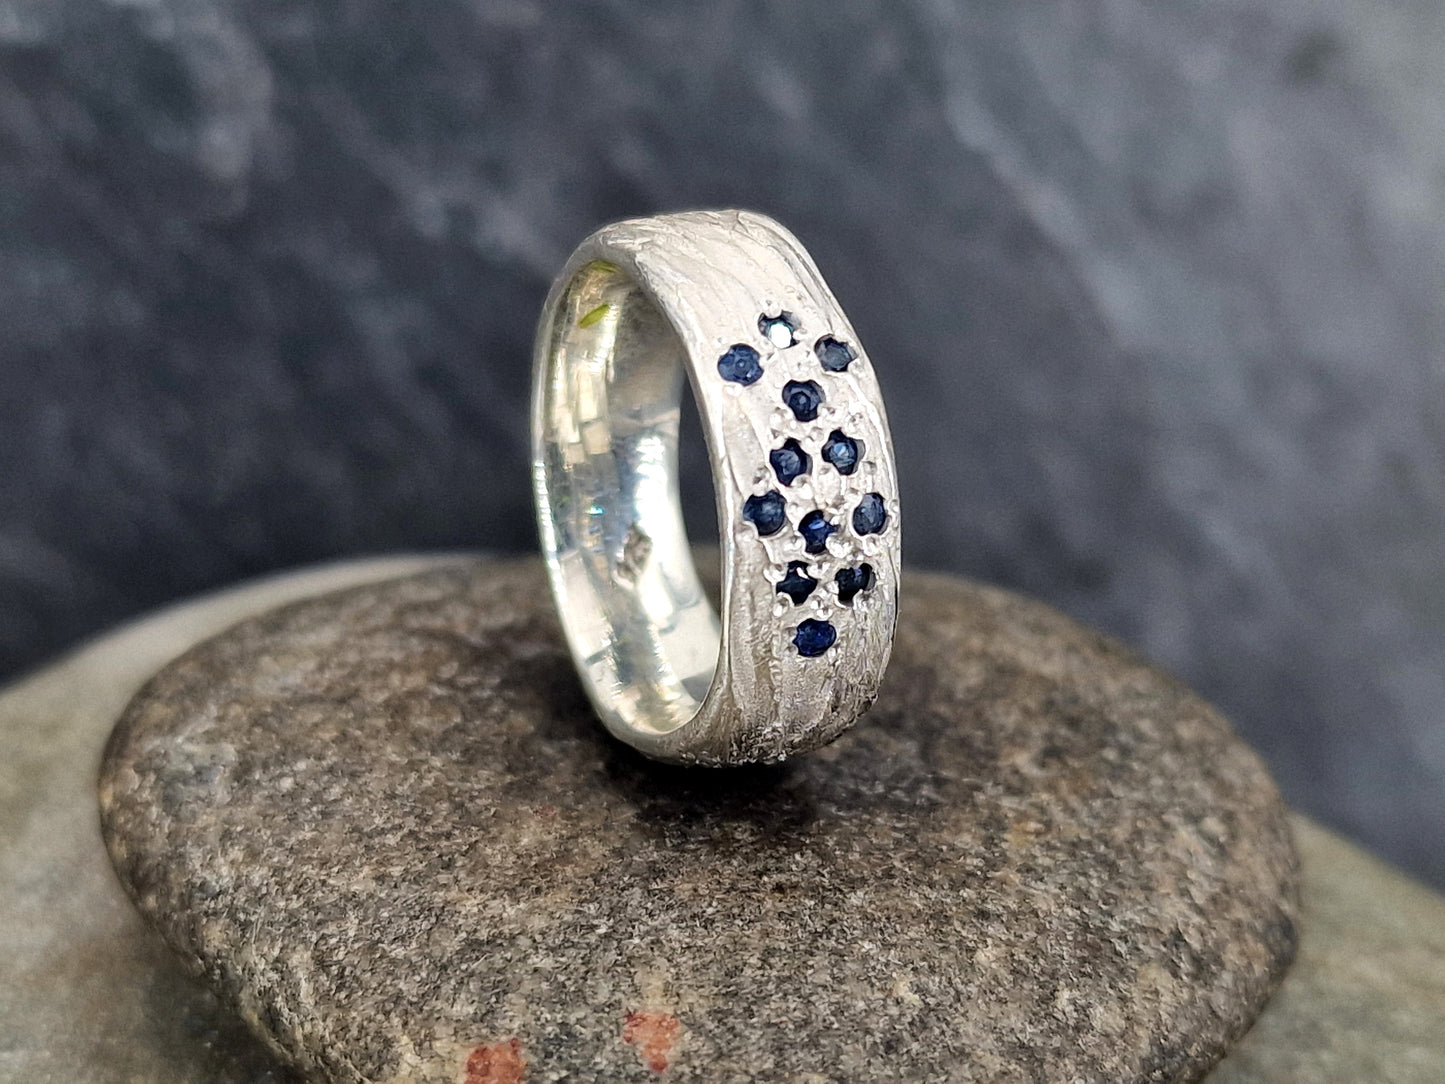 LeoLars-PABE Saphir Design Ring, Gr. 57 (18), aus 925er Silber mit Baumrinde als Oberflächen Struktur, massiv, blaue Saphire, Unikat, Handarbeit